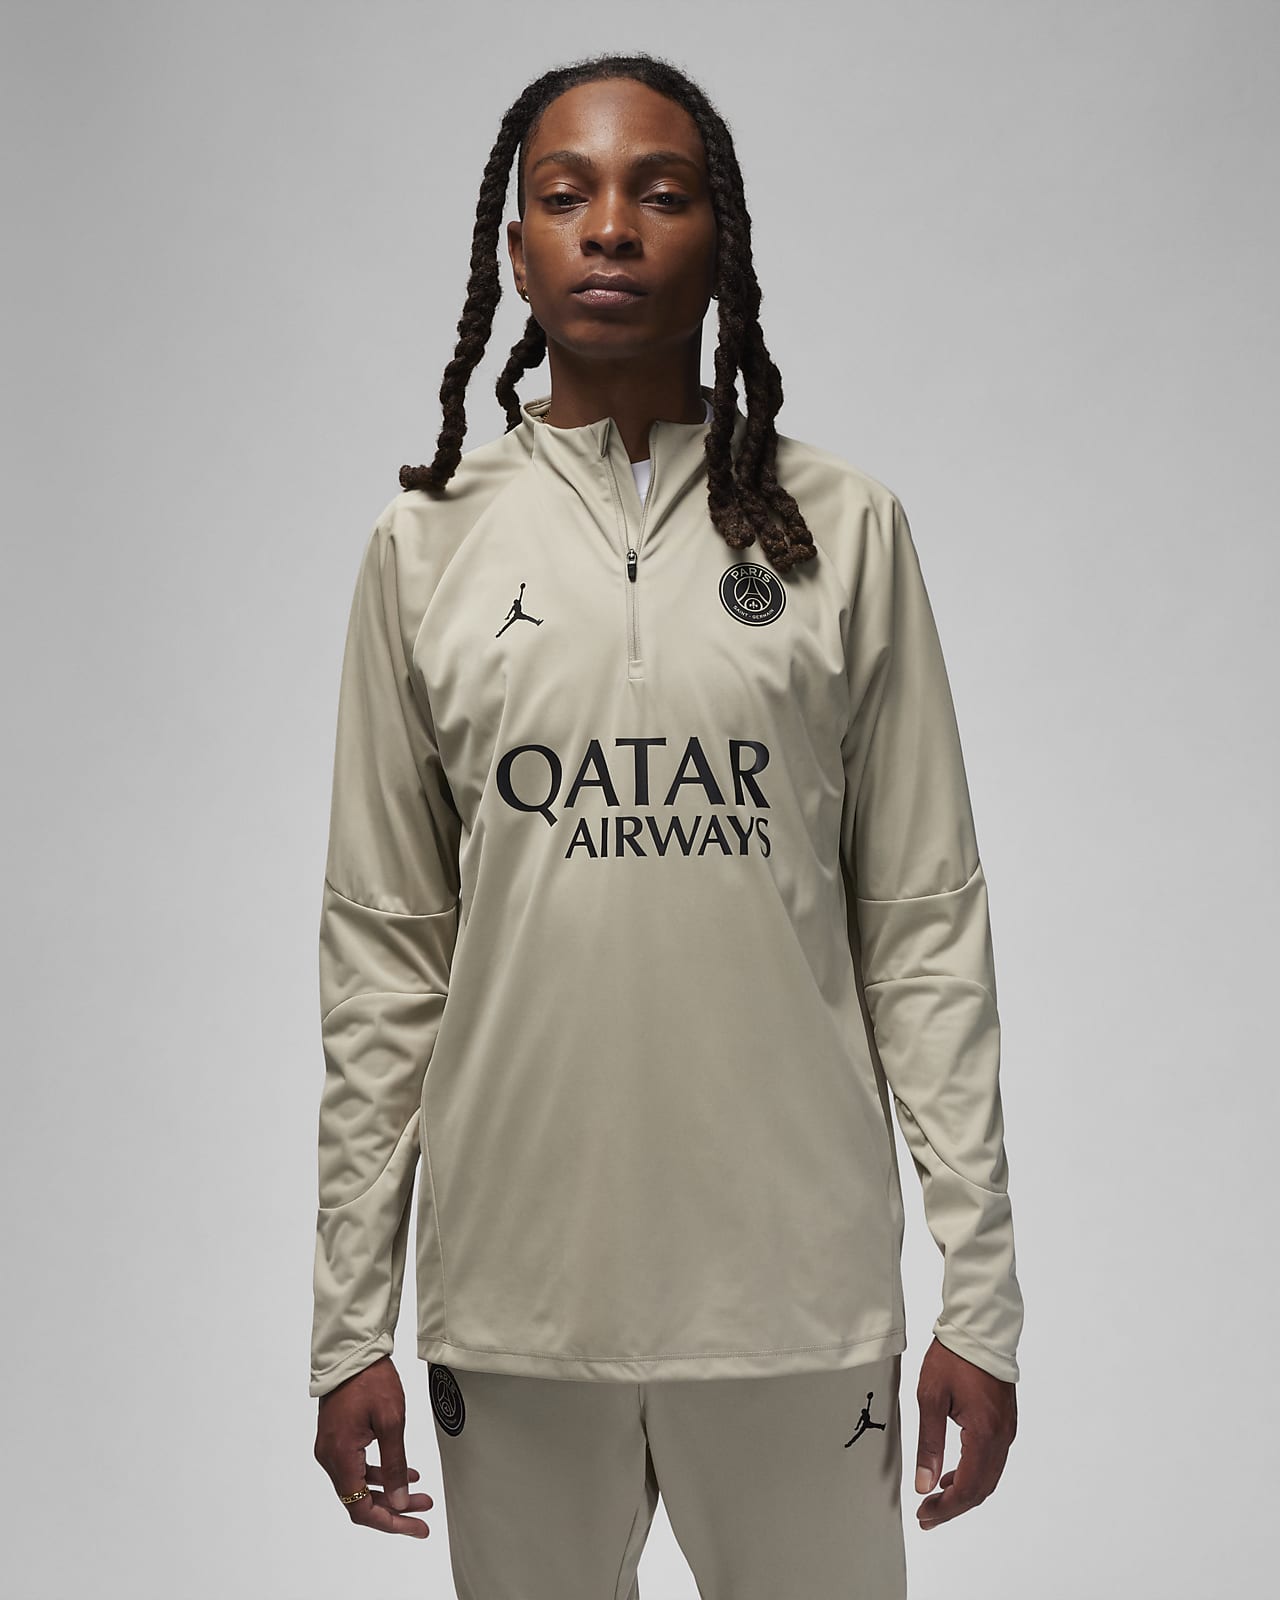 Ανδρική ποδοσφαιρική μπλούζα προπόνησης Jordan Storm-FIT εναλλακτικής εμφάνισης Παρί Σεν Ζερμέν Strike Winter Warrior